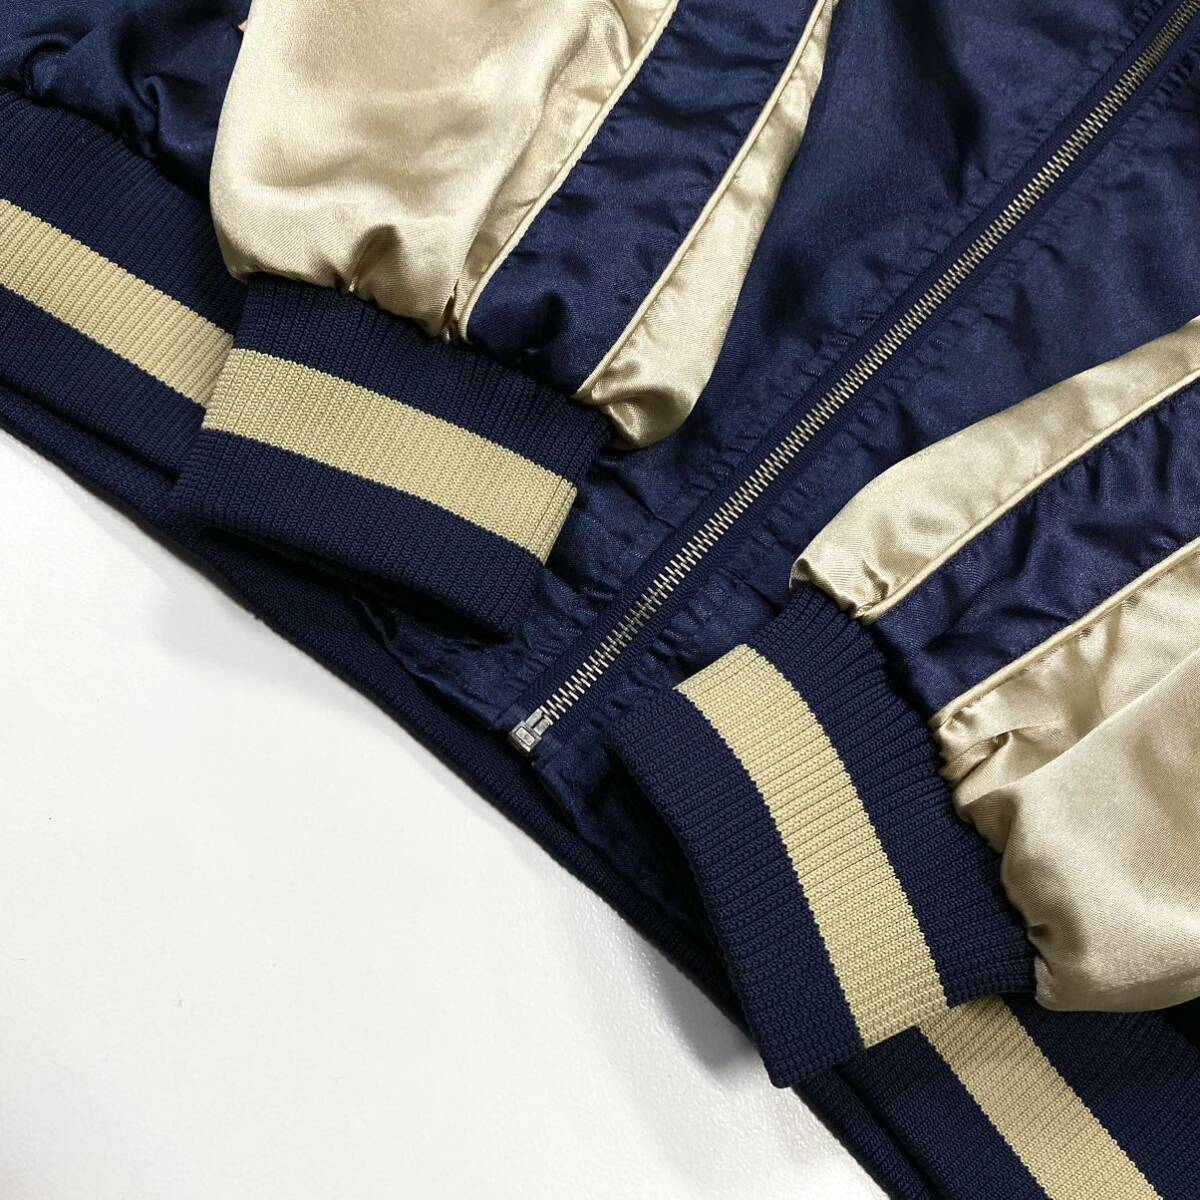  Yazawa Eikichi /PREMIUM MALT\'S Japanese sovenir jacket мужской L соответствует темно-синий золотистый, цвет шампанского серия задняя сторона вышивка Logo YAZAWA с хлопком нет атлас жакет 